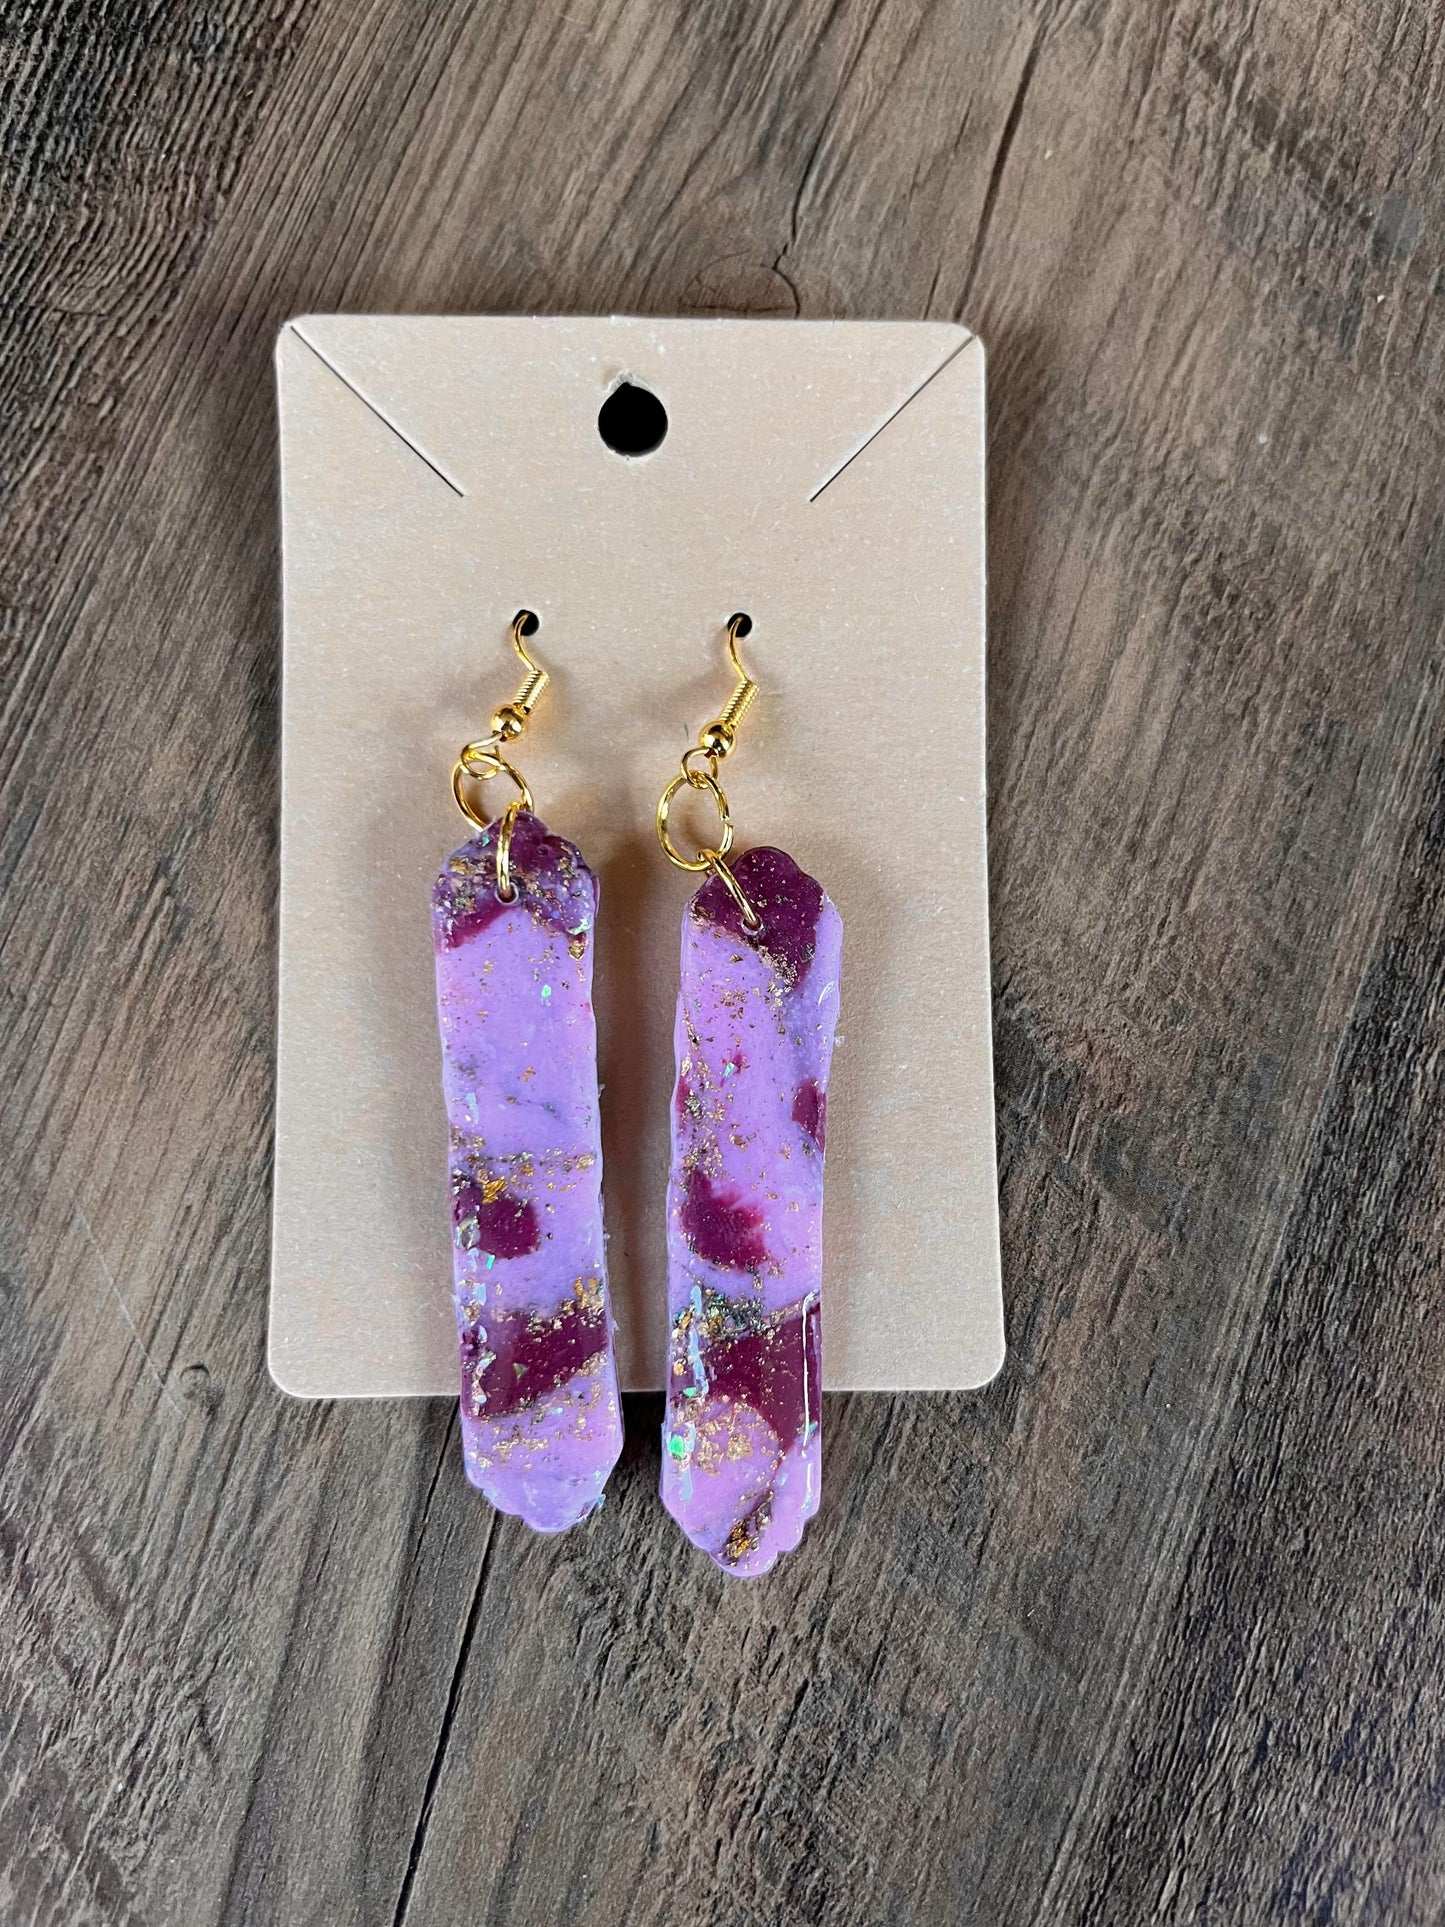 Clay Earrings in "Shimmery Rose/Burgundy" designs